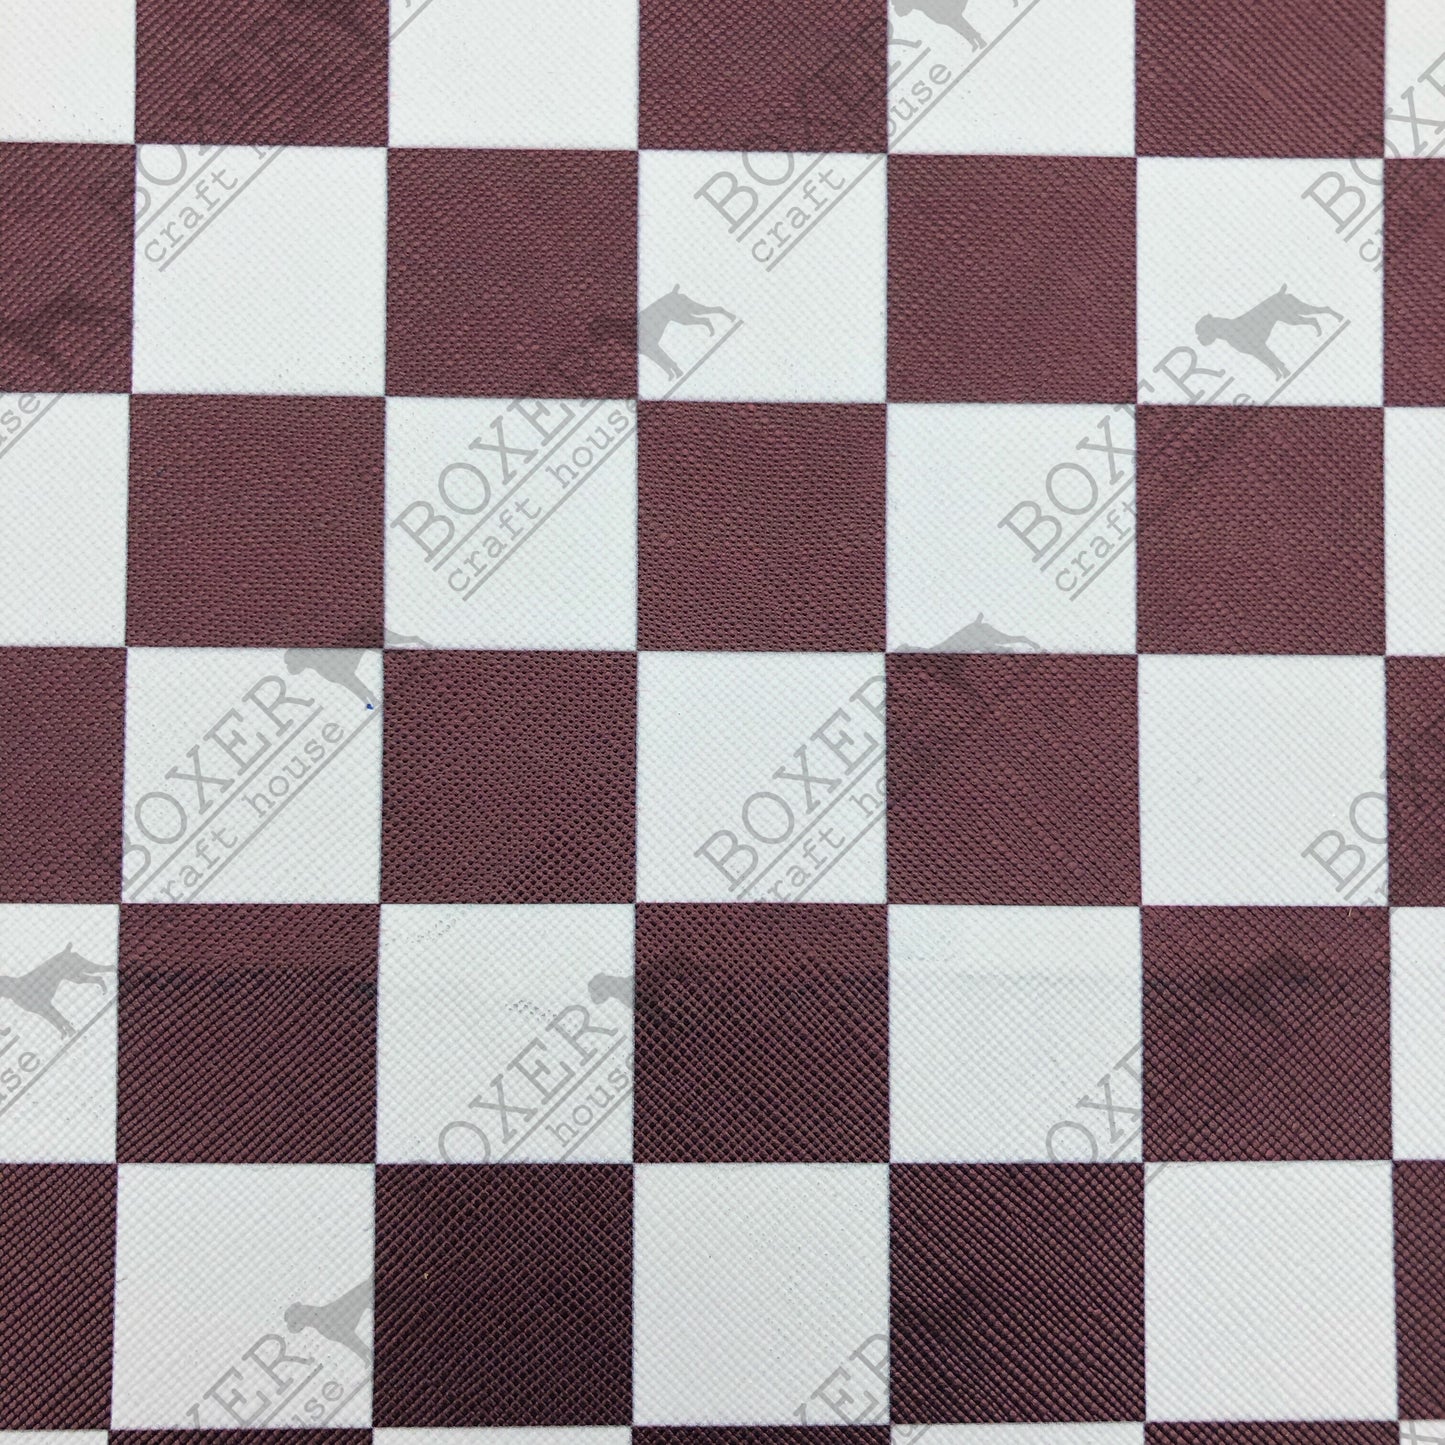 Checkerboard Print